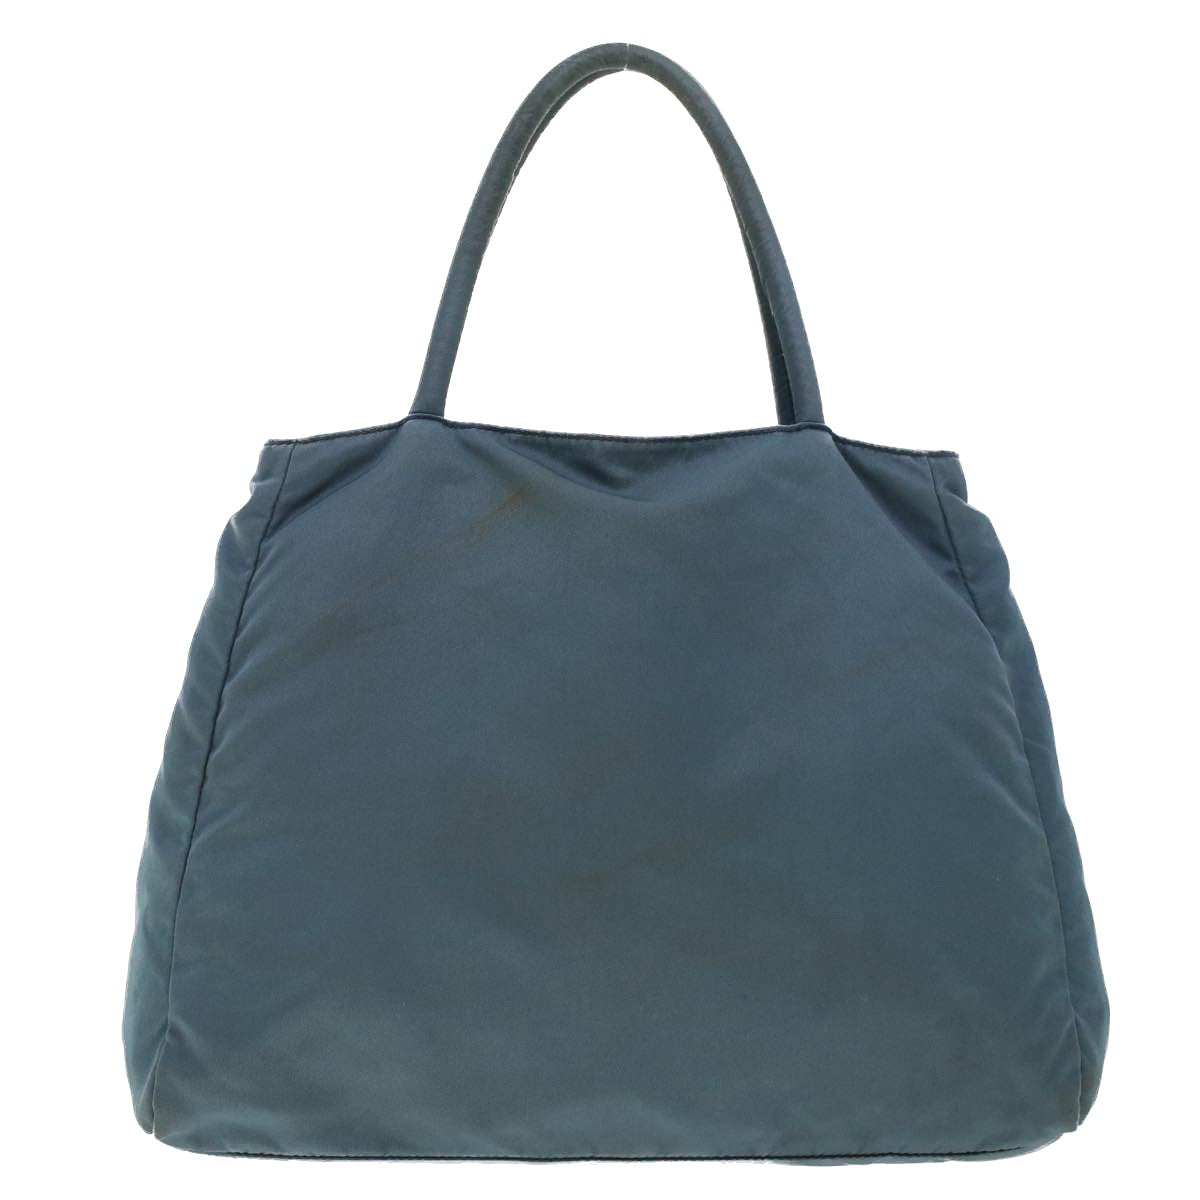 PRADA Hand Bag Nylon Light Blue Auth 45809 - 0